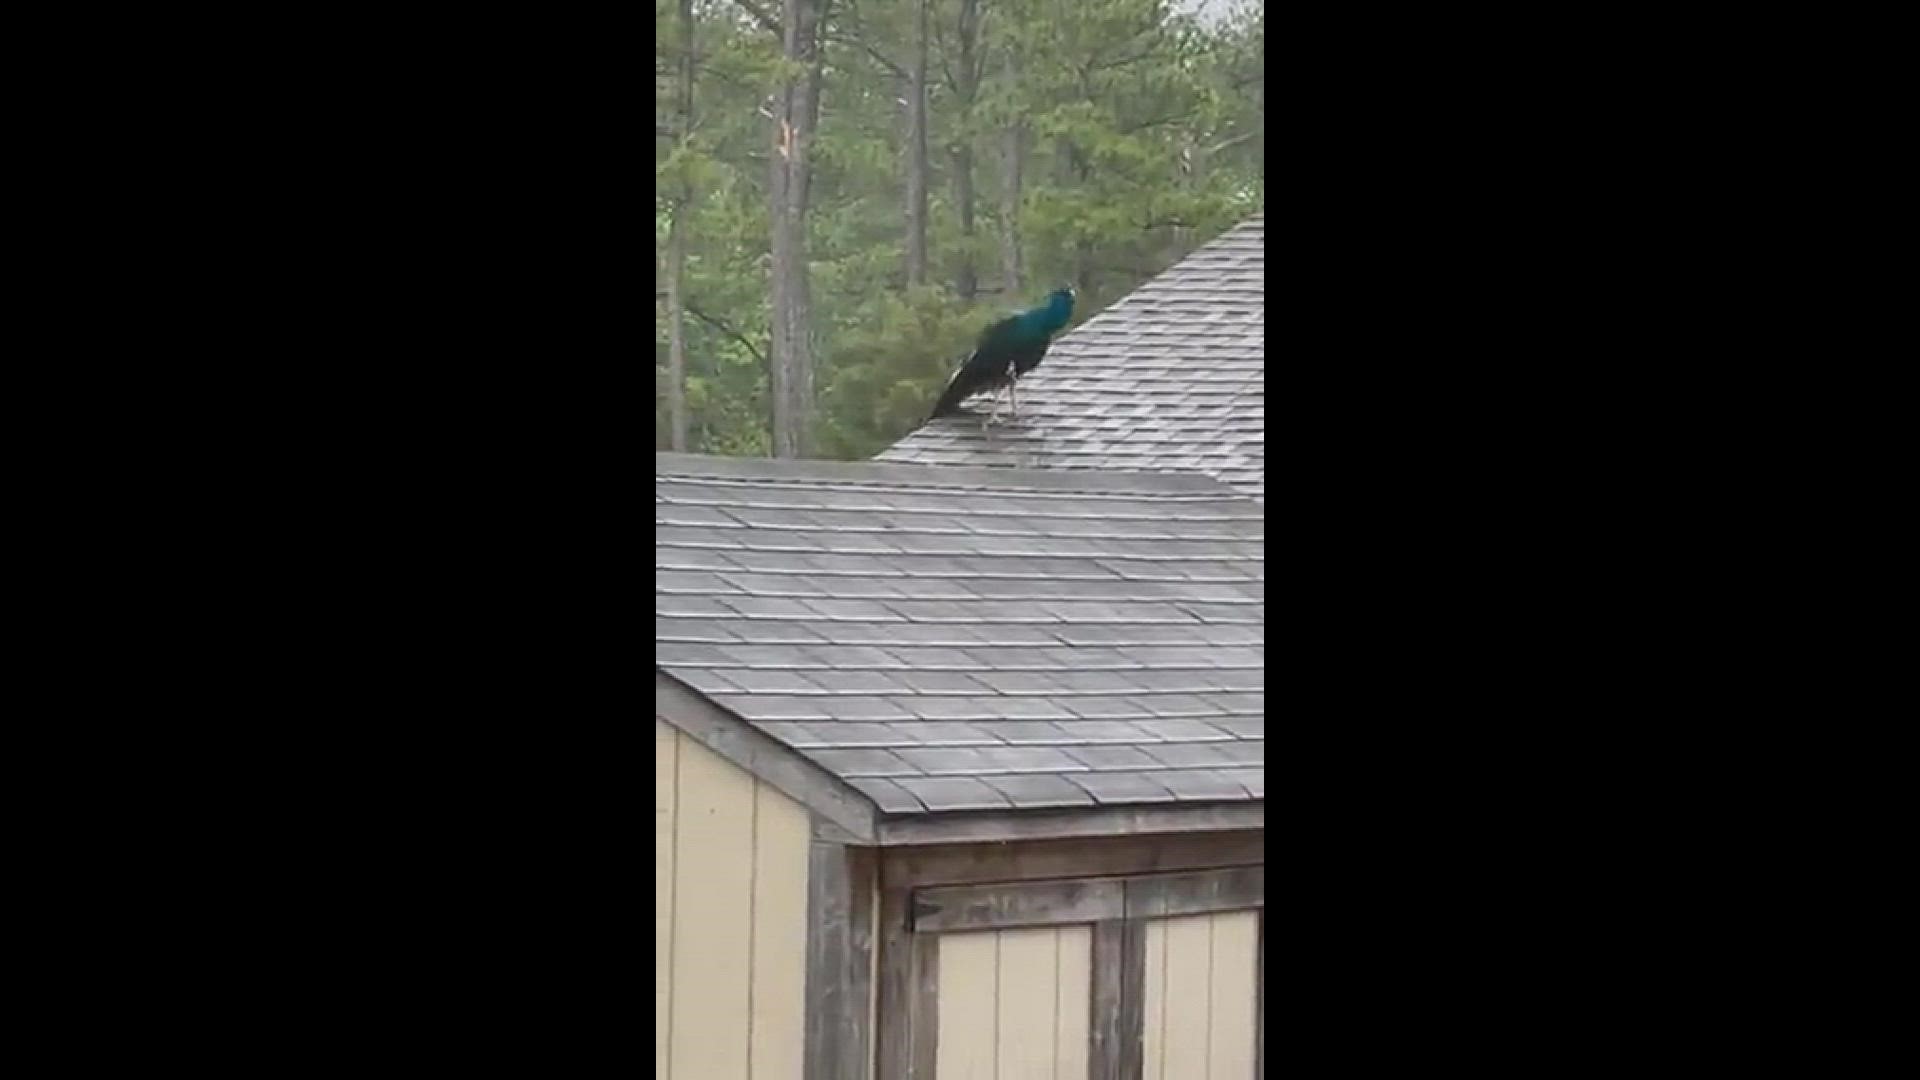 The latest sighting of Chesapeake's peacock. Video courtesy Tiffany Edwards
Credit: Tiffany Edwards